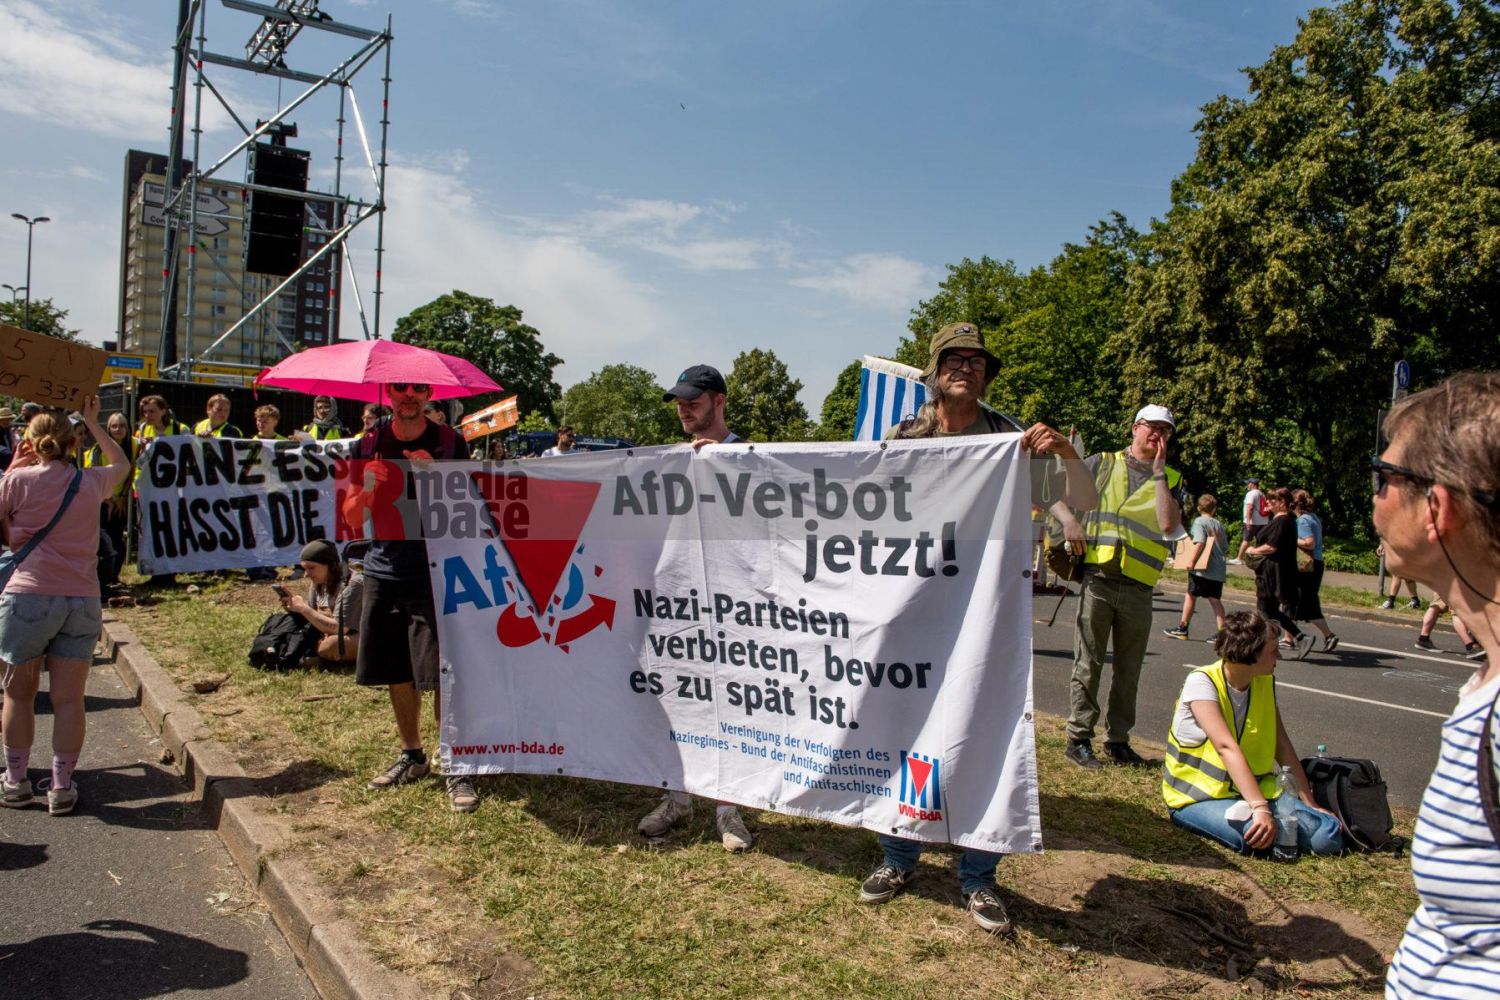 Laut - Bunt - Entschlossen! Protest gegen den Bundesparteitag der AfD in Essen <i>Bild Christian Schneider/R-mediabase</i> <br><a href=/confor2/?bld=83090&pst=82663&aid=615&dc=1325&i1=Christian%20Schneider/R-mediabase><strong>Downloadanfrage</strong></a>  